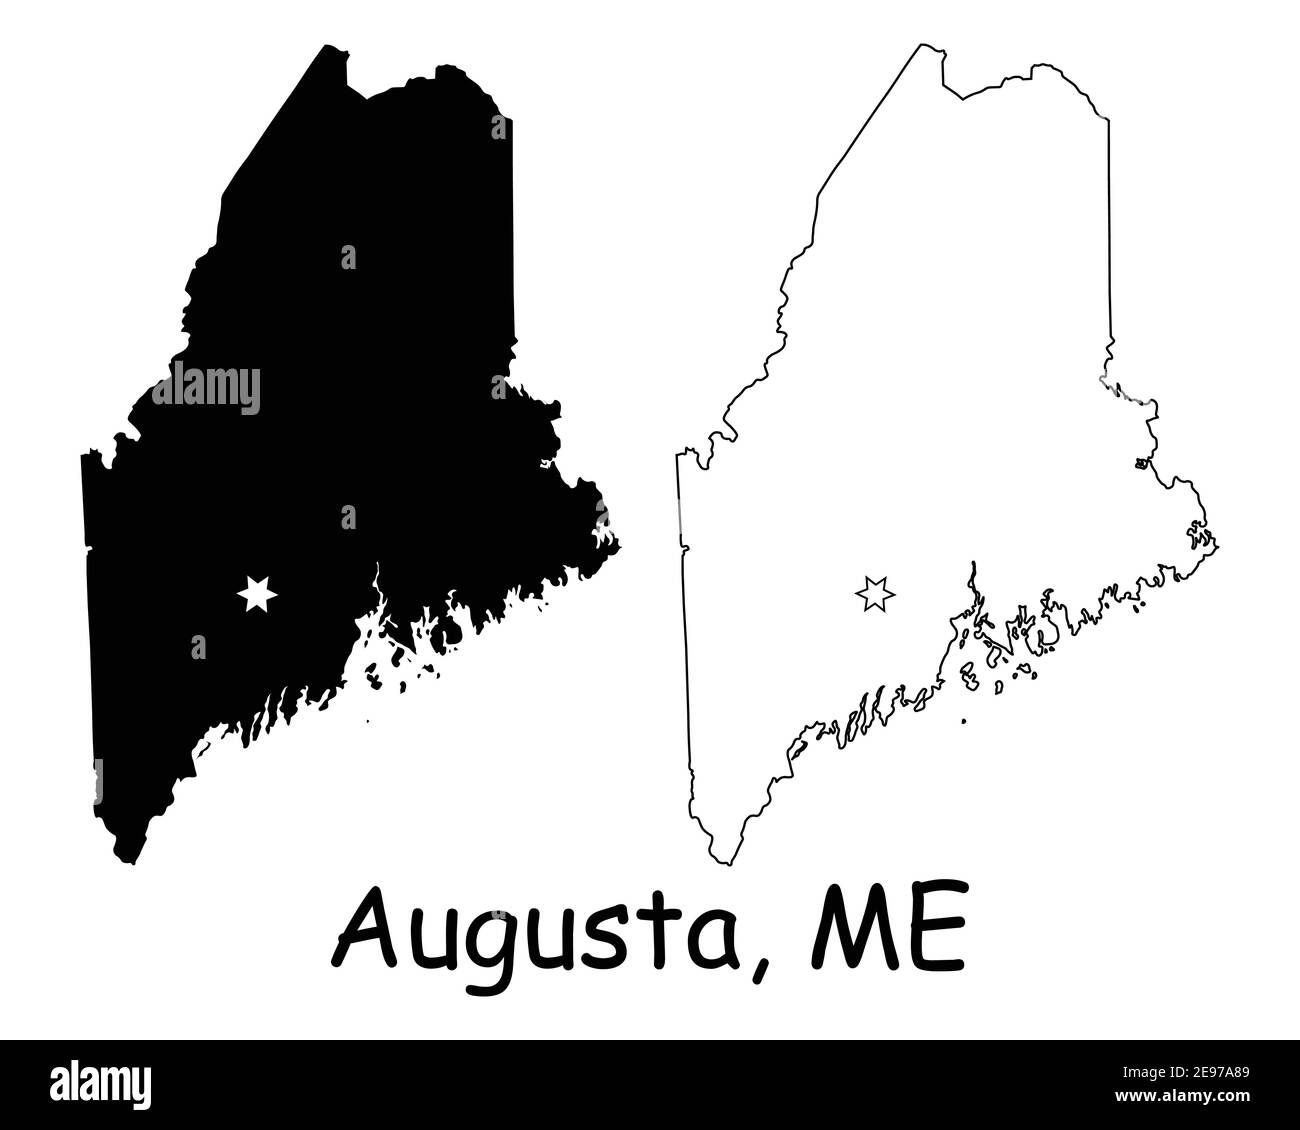 Maine ME state Map USA con la capitale City Star ad Augusta. Silhouette nera e profilo isolato su sfondo bianco. Vettore EPS Illustrazione Vettoriale